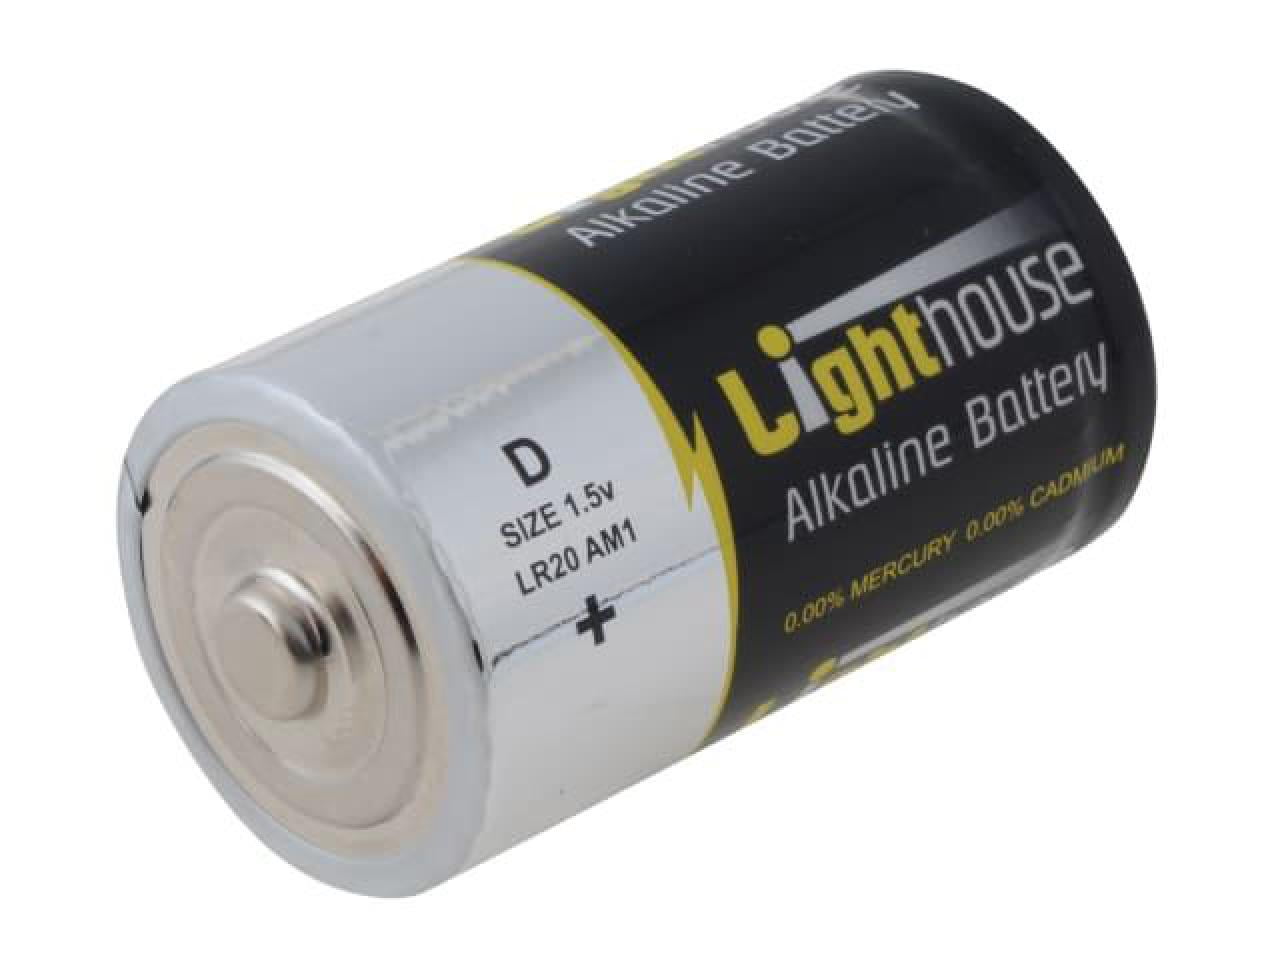 Alkaline D-cell battery, 2-pack (EG-BA-LR20-01)